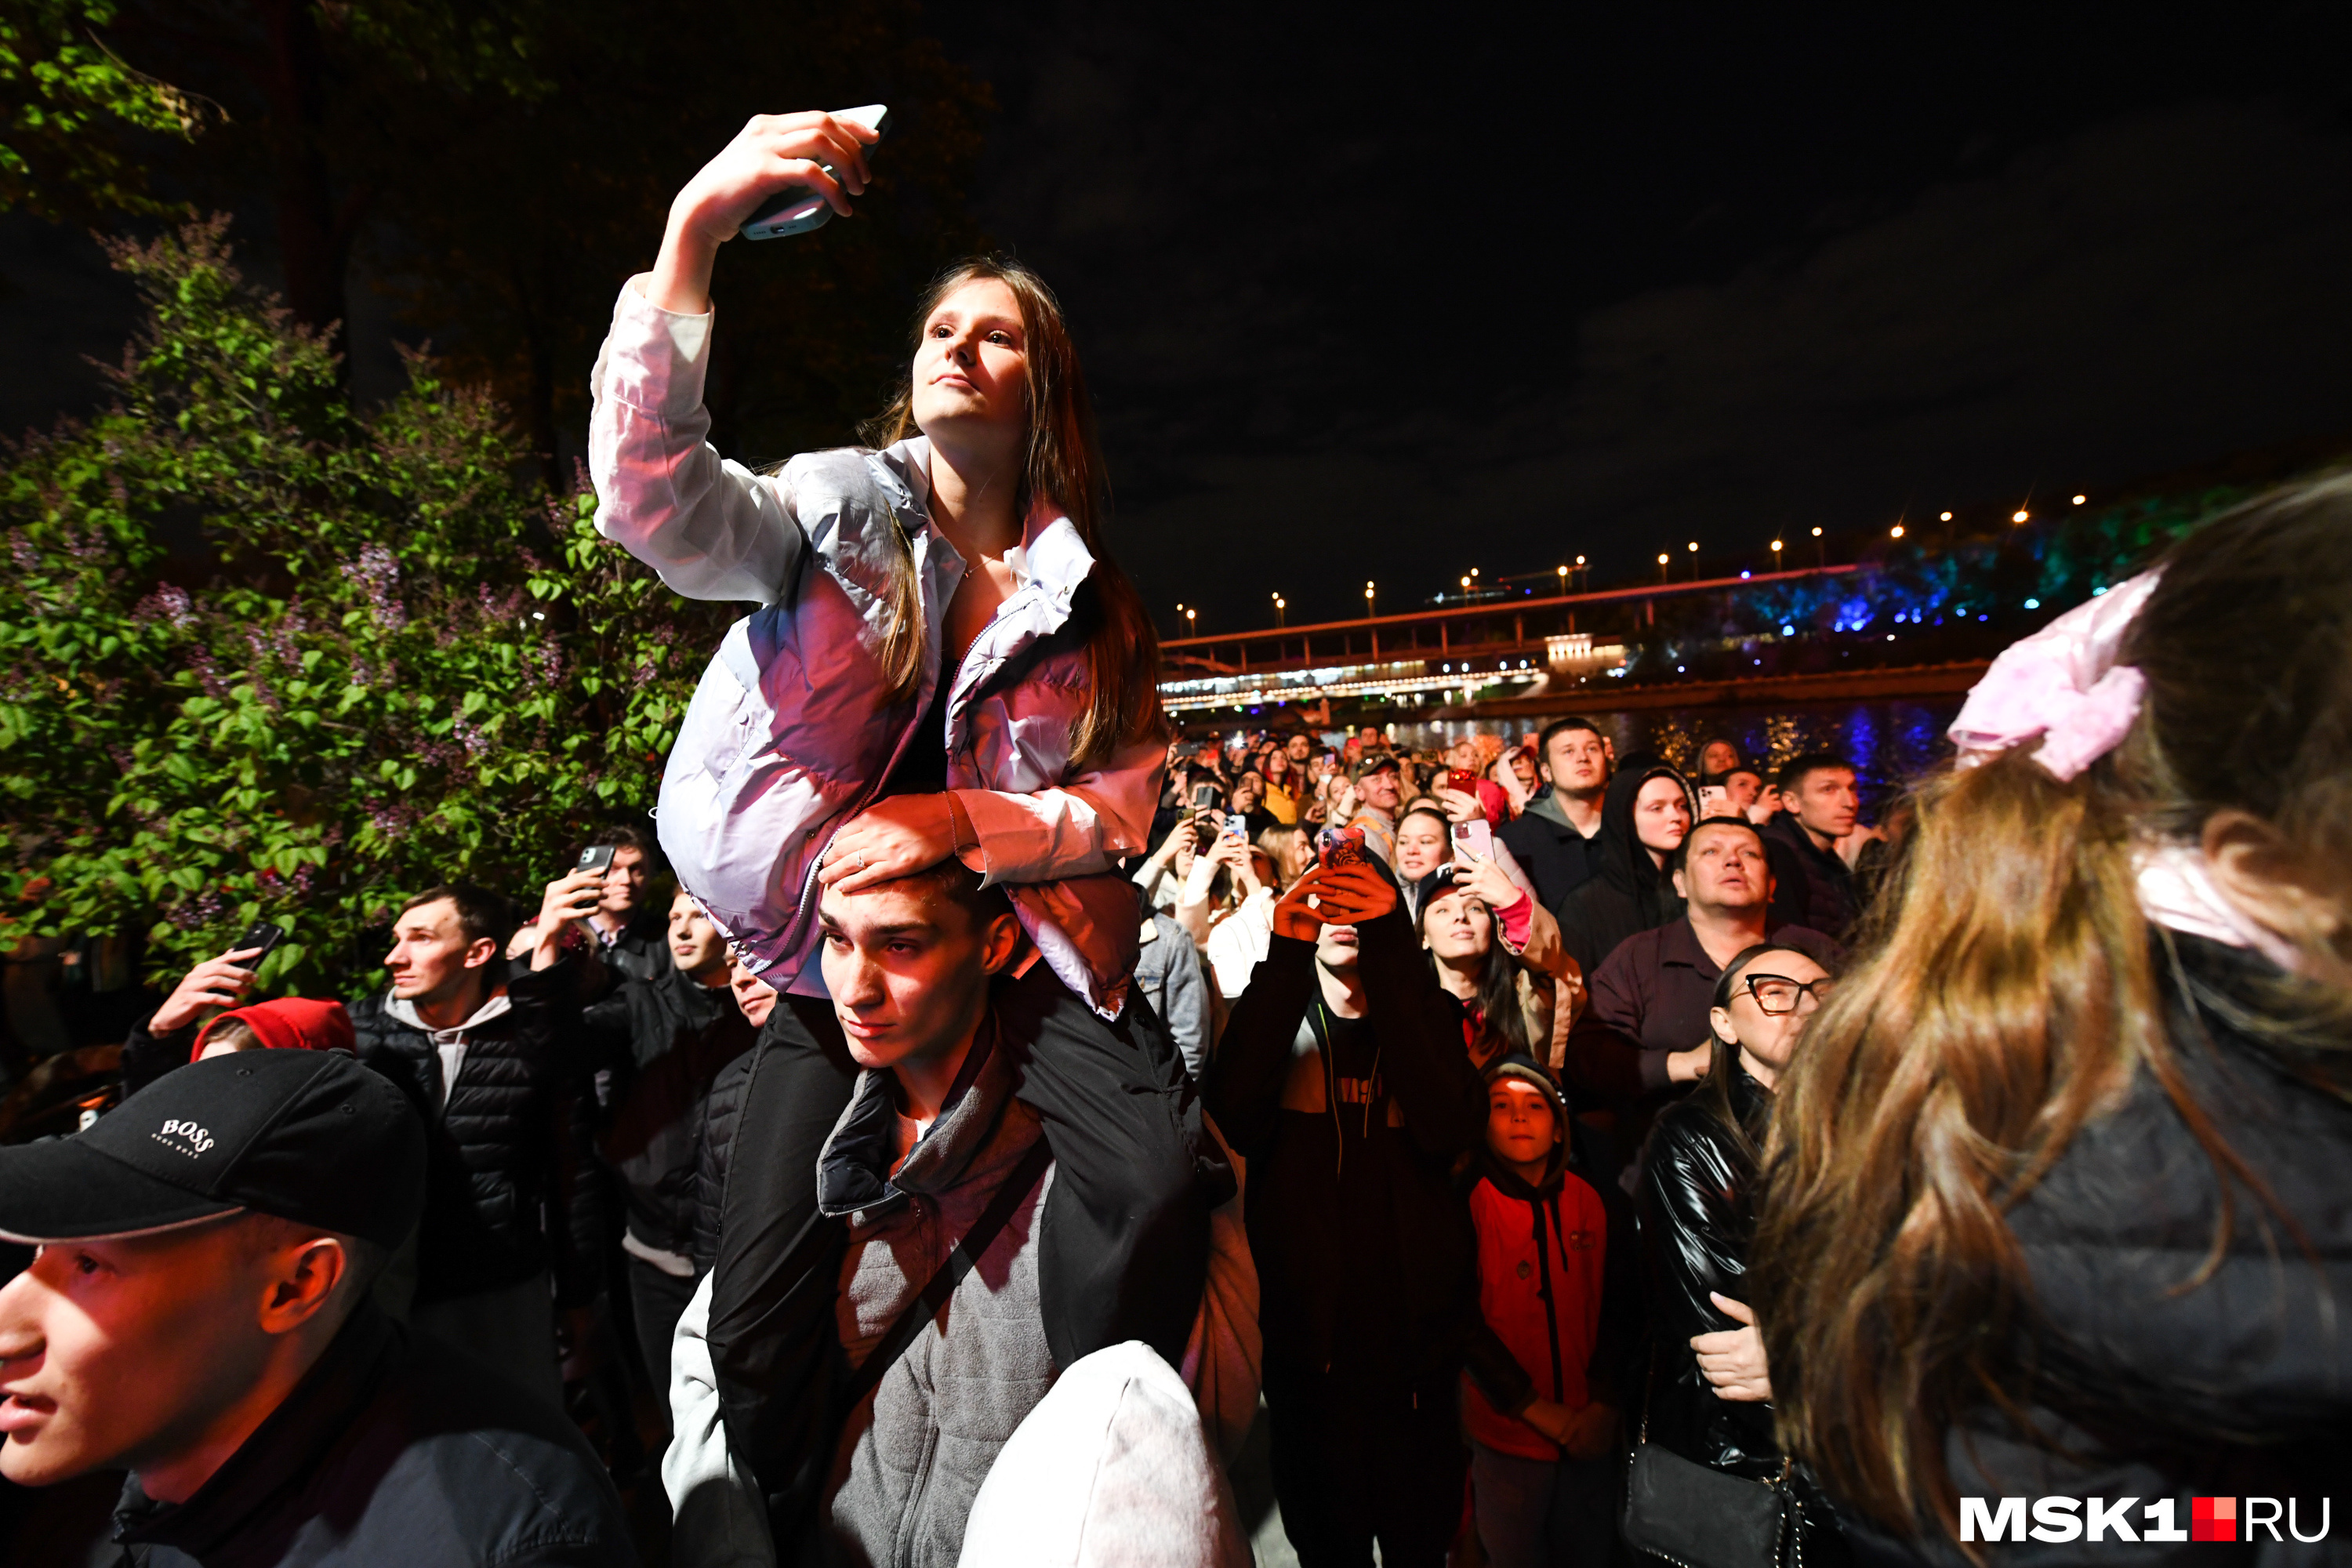 Вечером возле стадиона Лужники и на Поклонной горе люди собрались смотреть салют